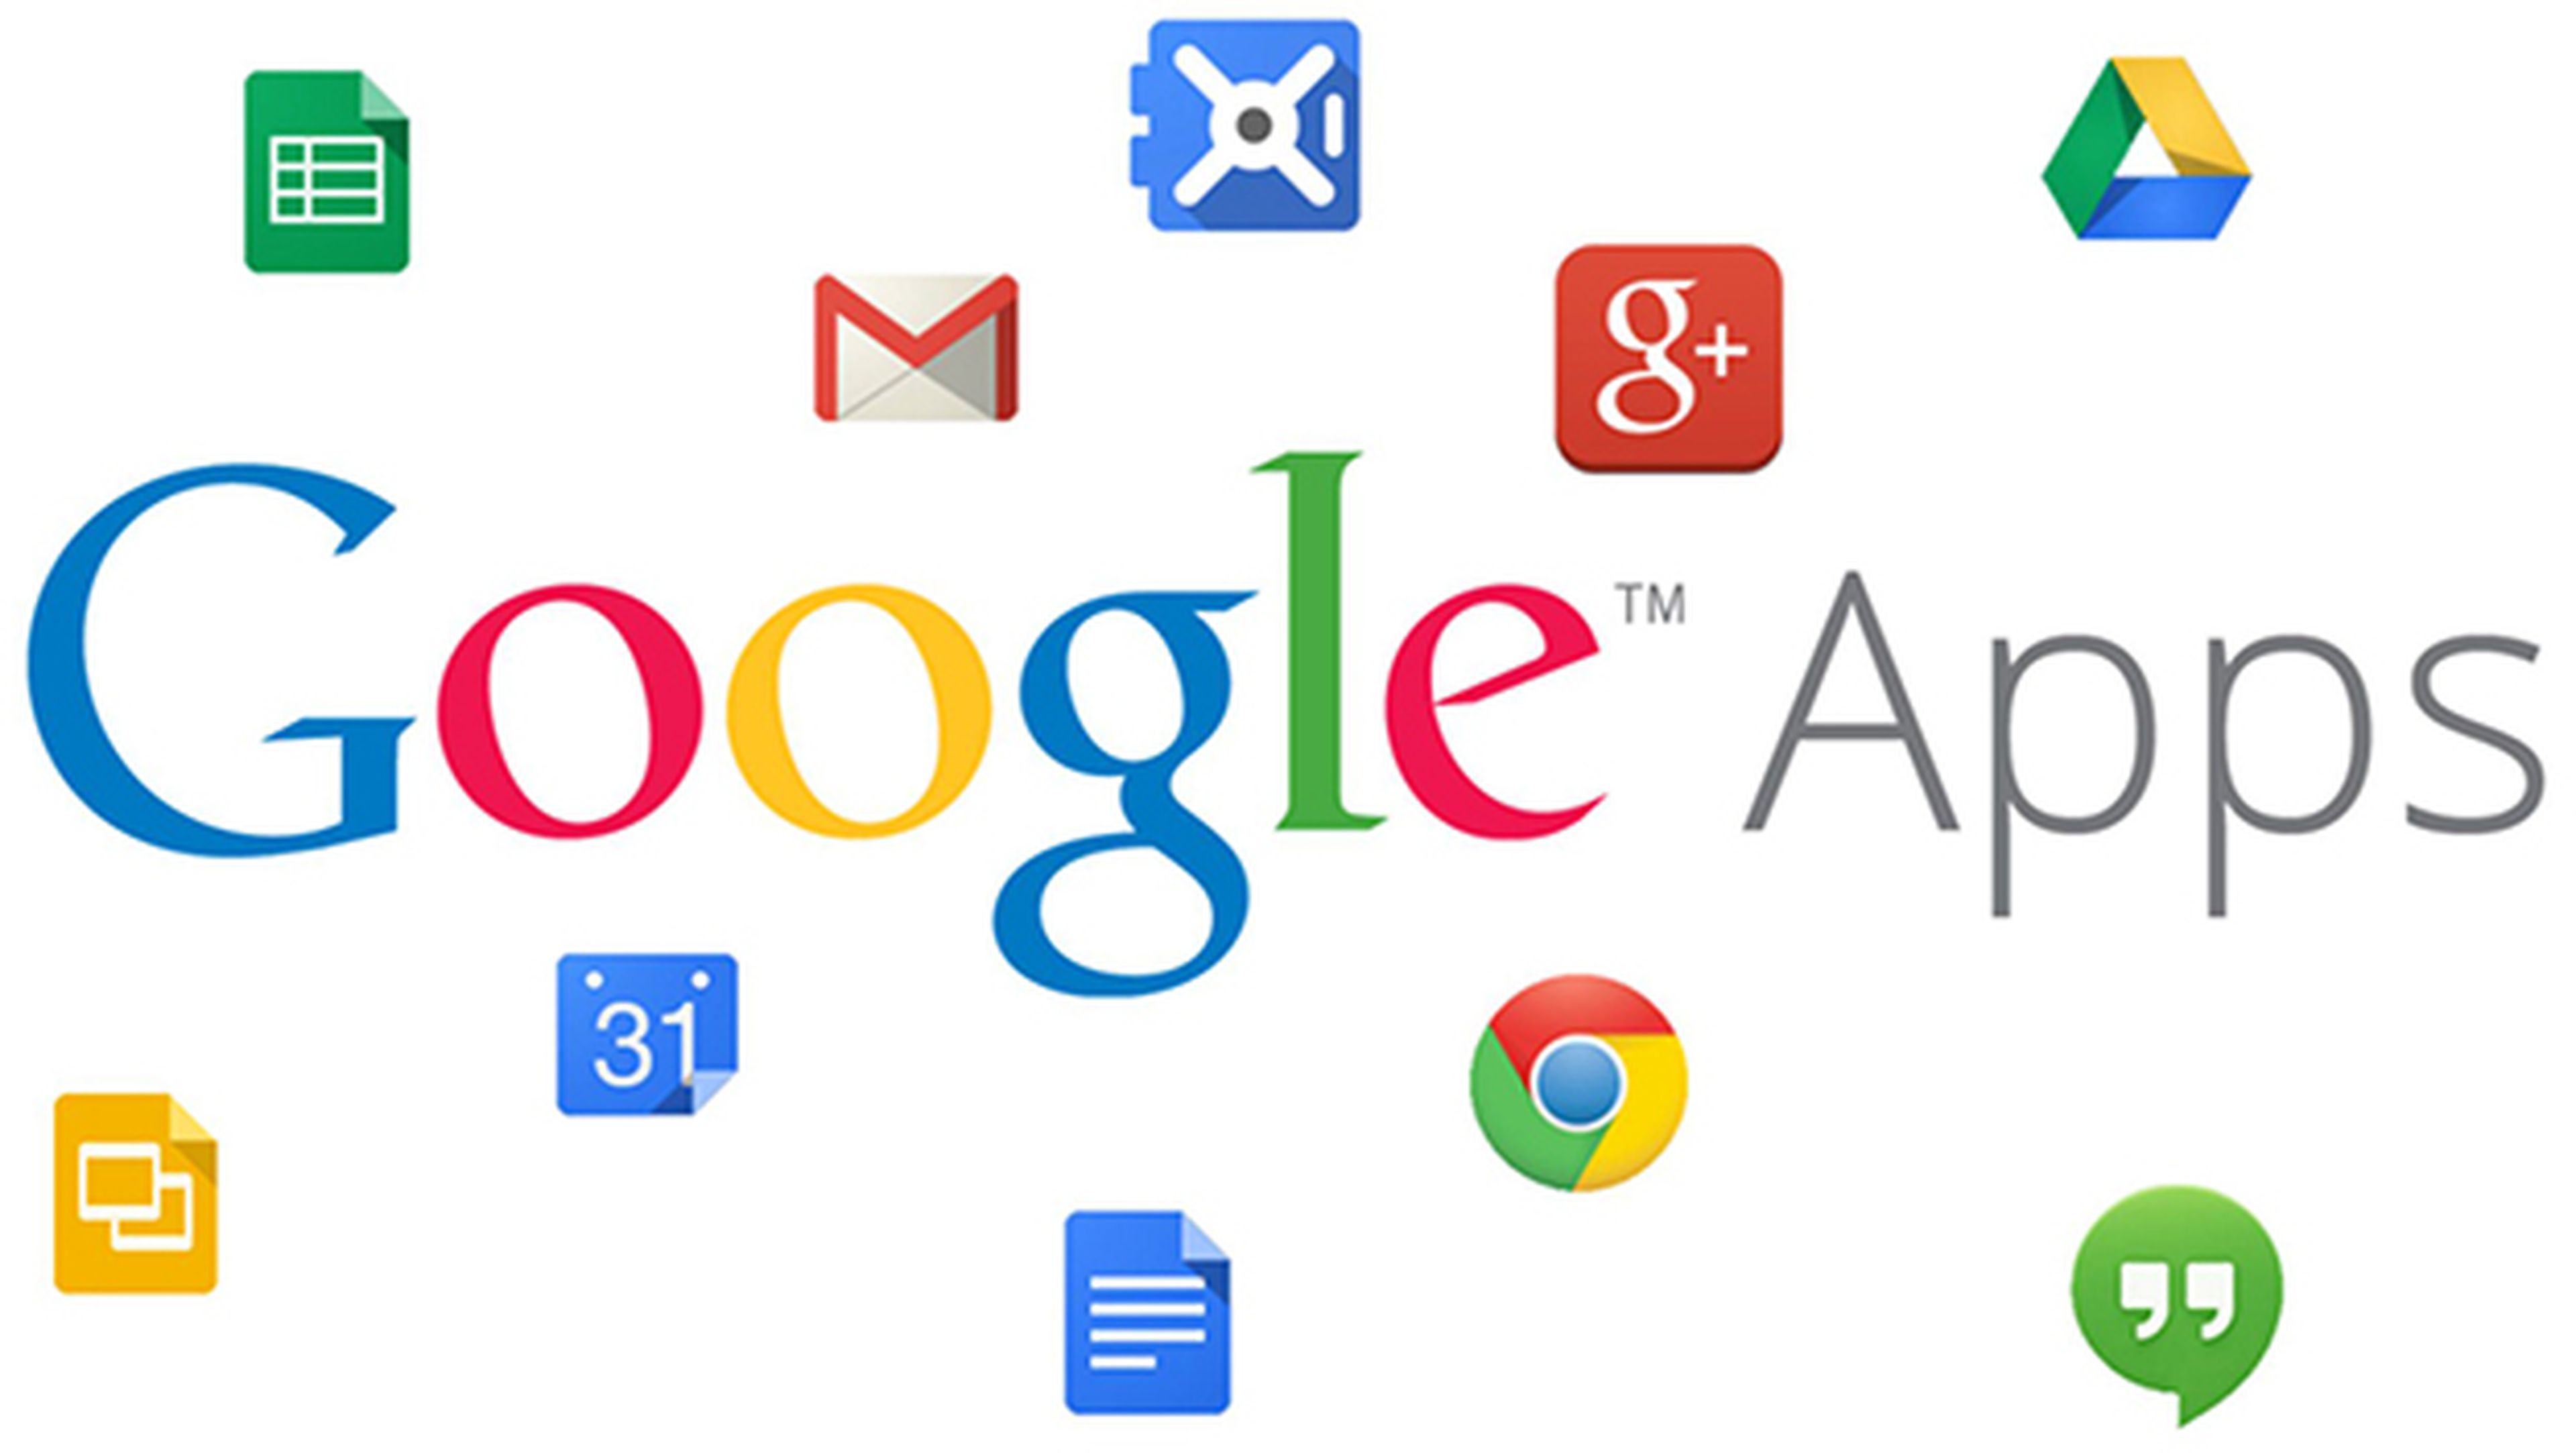 Mira las nuevas aplicaciones de Google que vas a empezar a usar